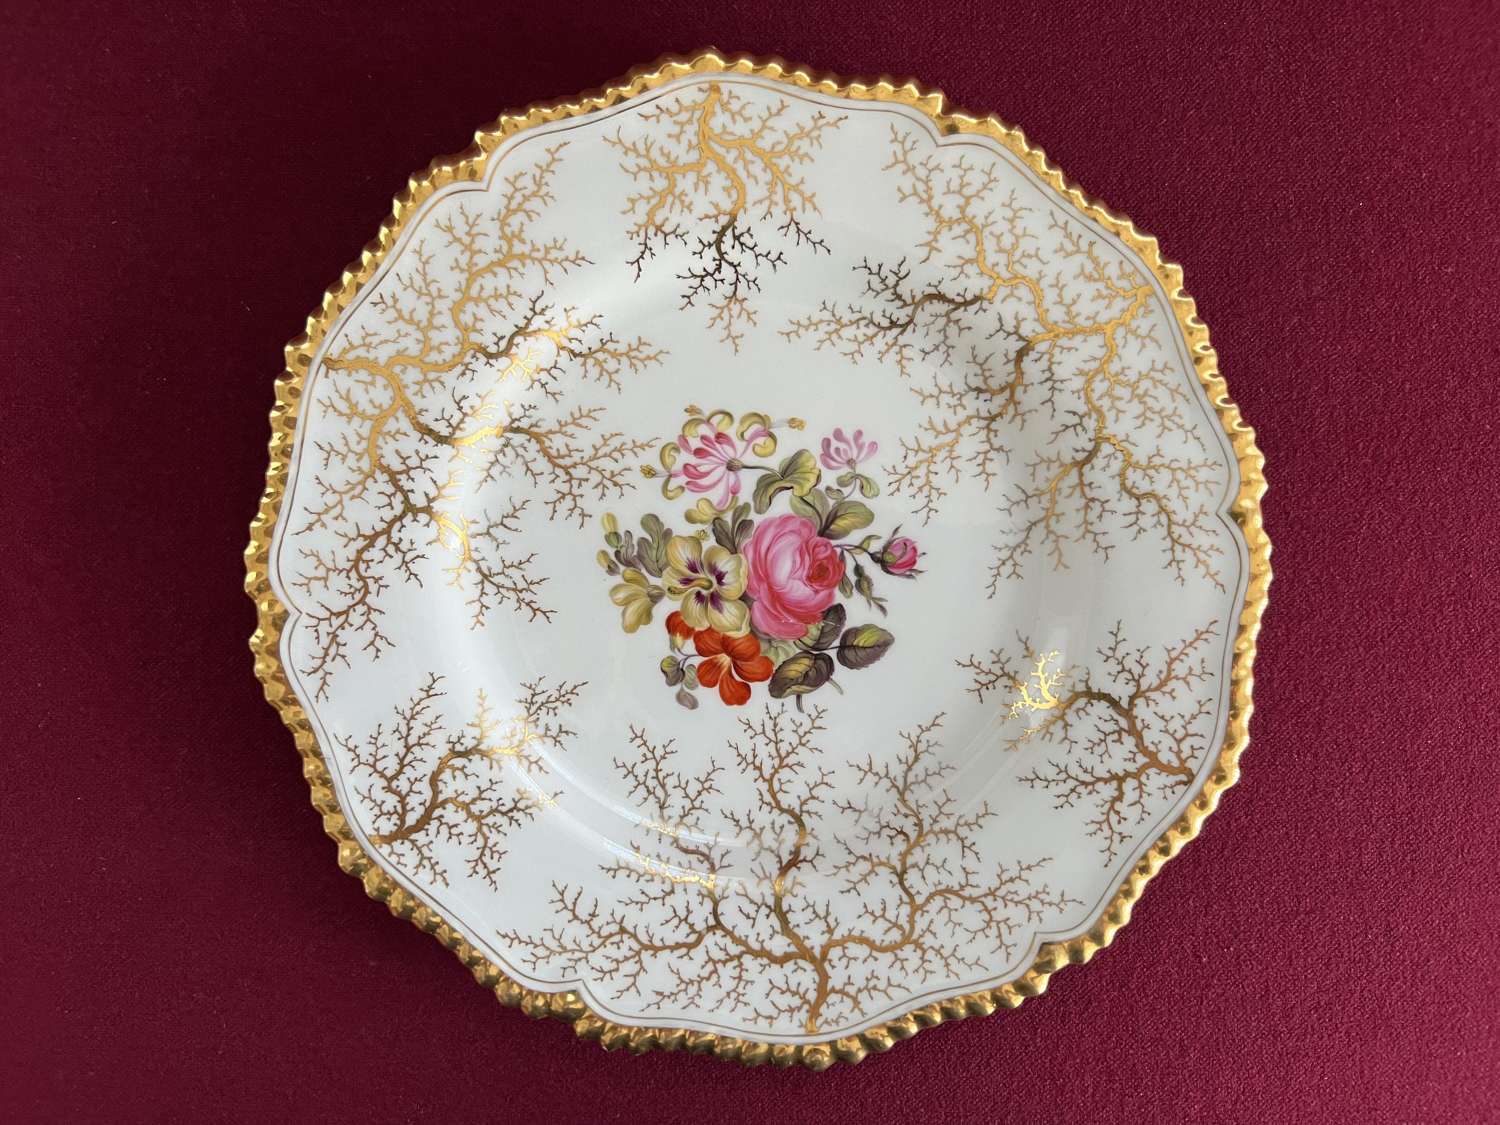 A Flight, Barr & Barr Worcester Porcelain Dessert Plate c.1825